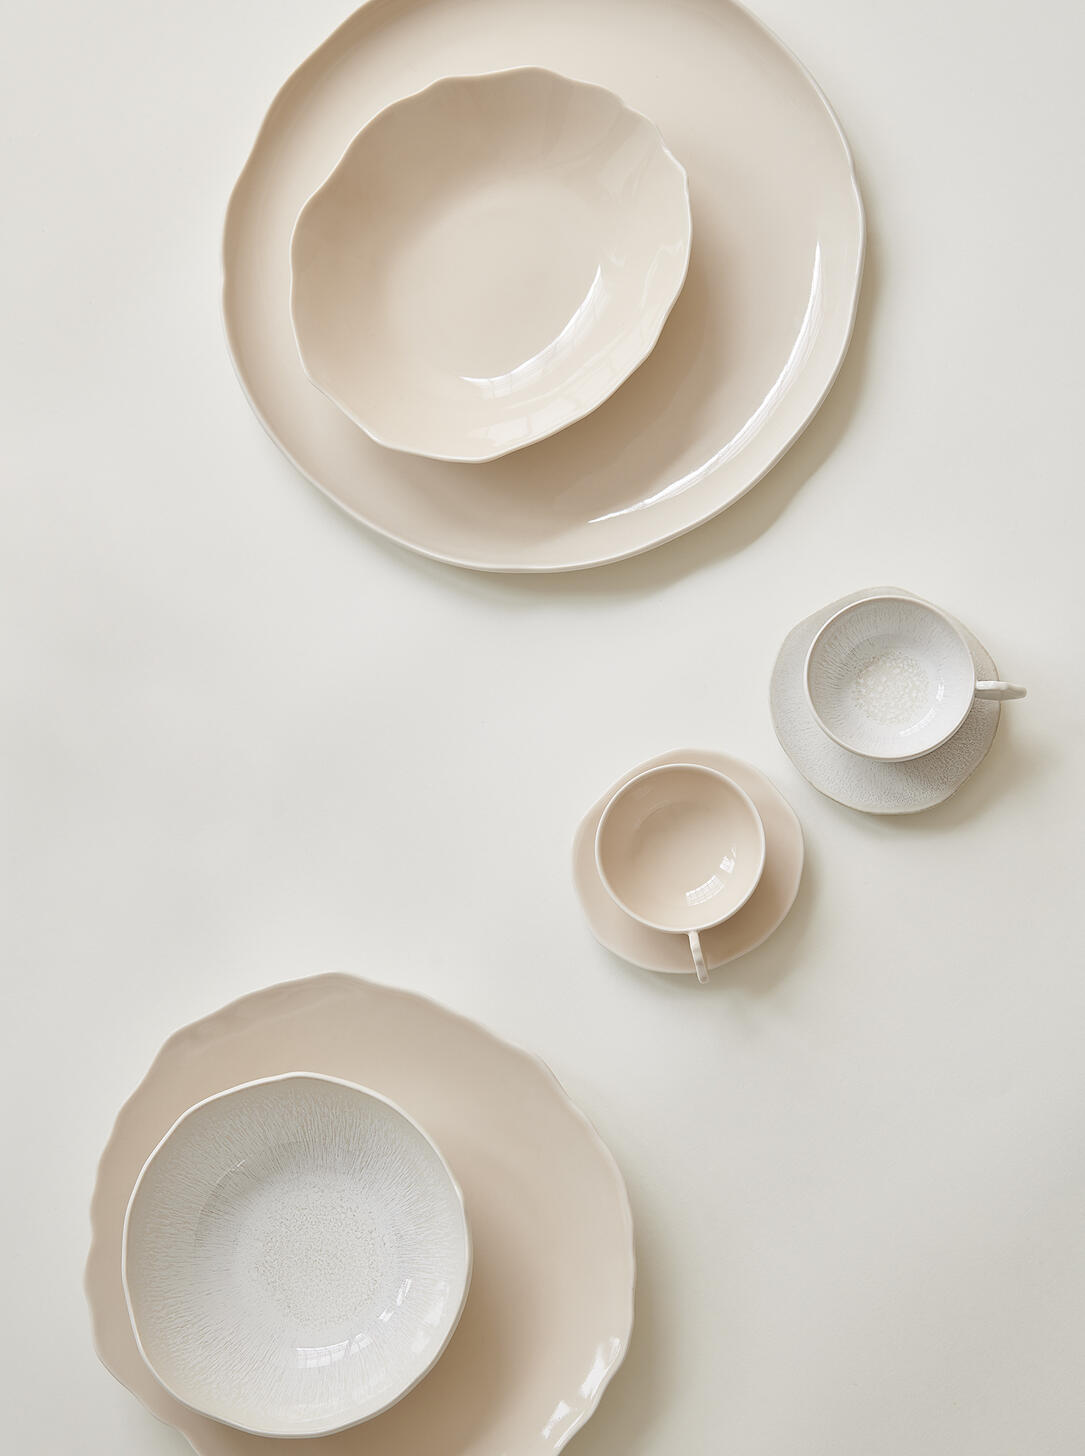 cup & saucer - m plume nude ceramic manufacturer